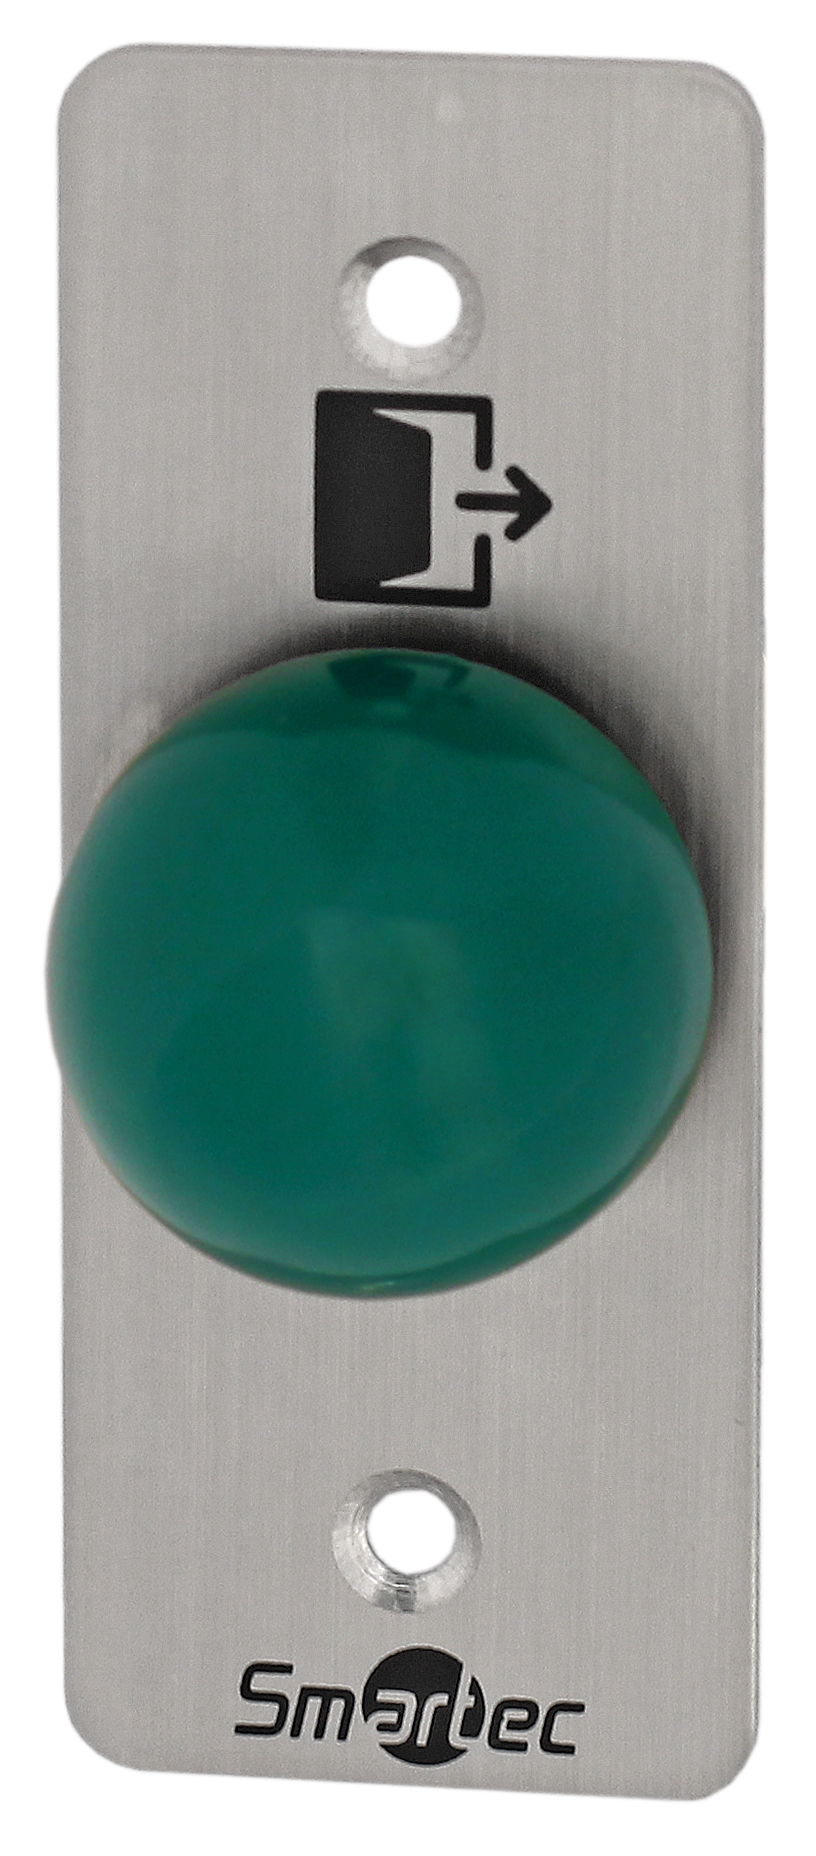 Кнопка металлическая, врезная, кнопка грибок, НЗ/НР контакты, размер: 35х90 мм